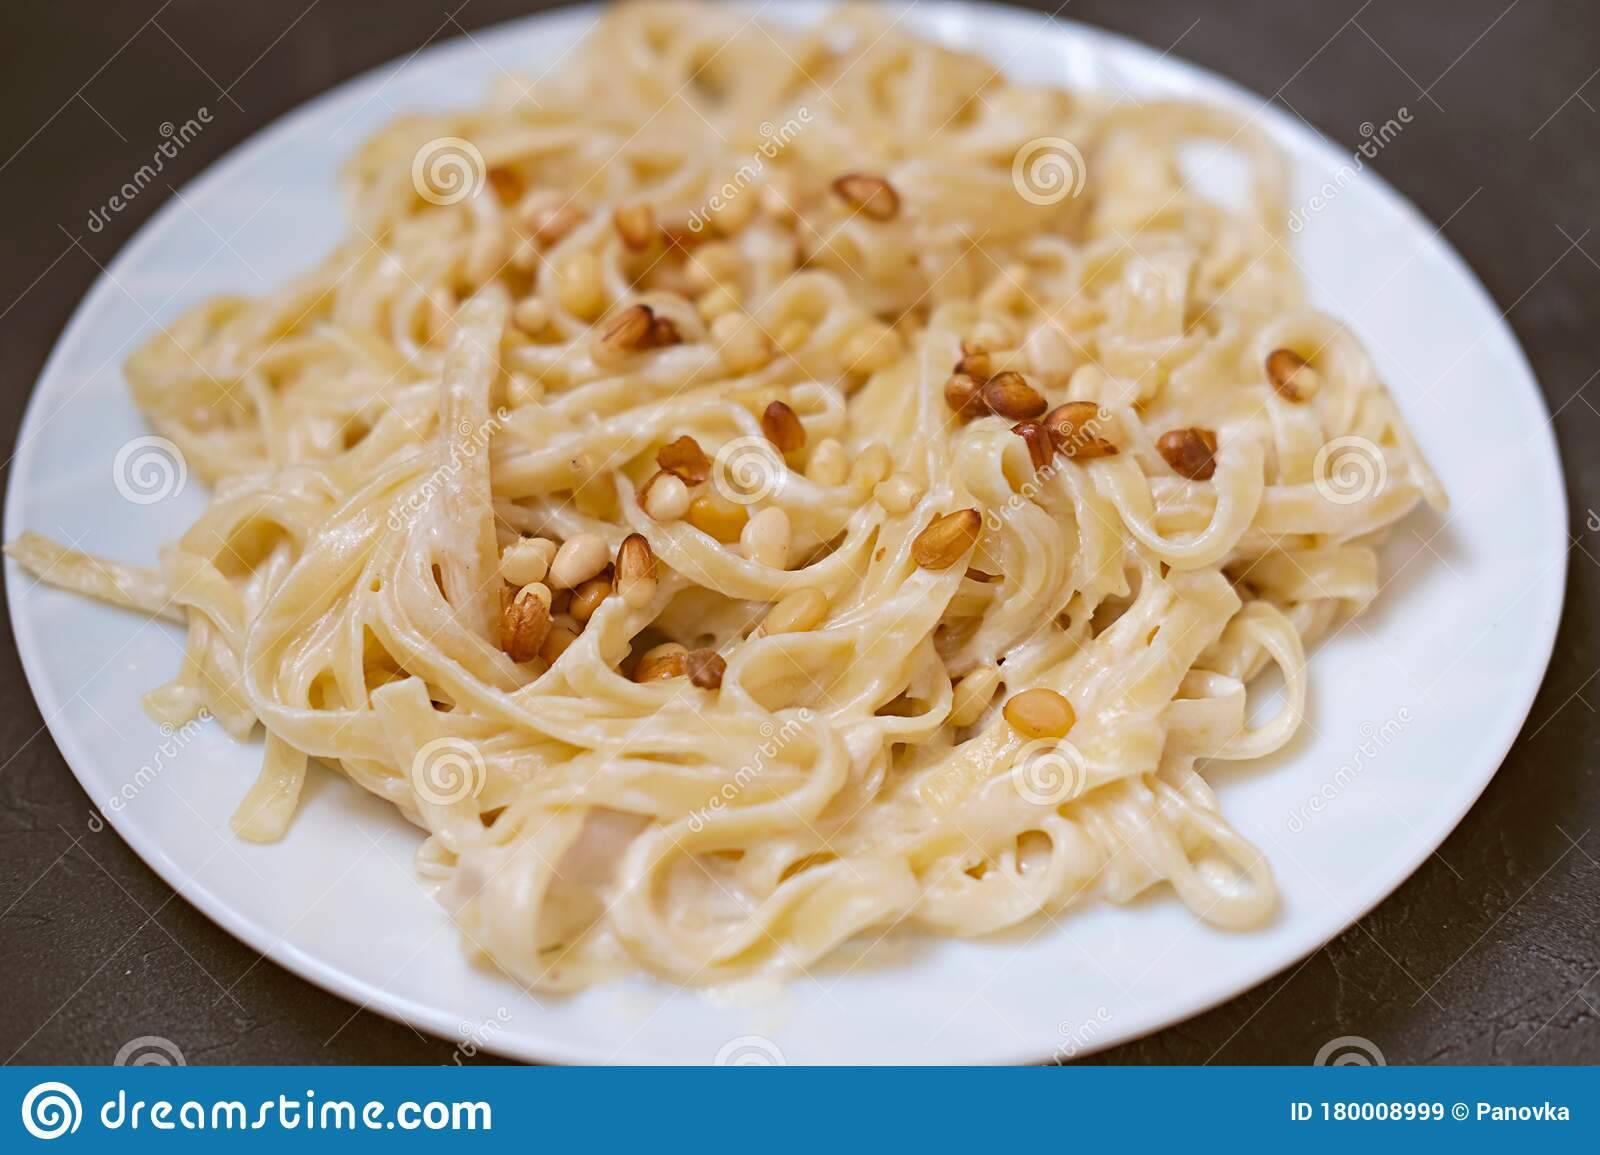 Ореховая паста — 8 рецептов приготовления в домашних условиях